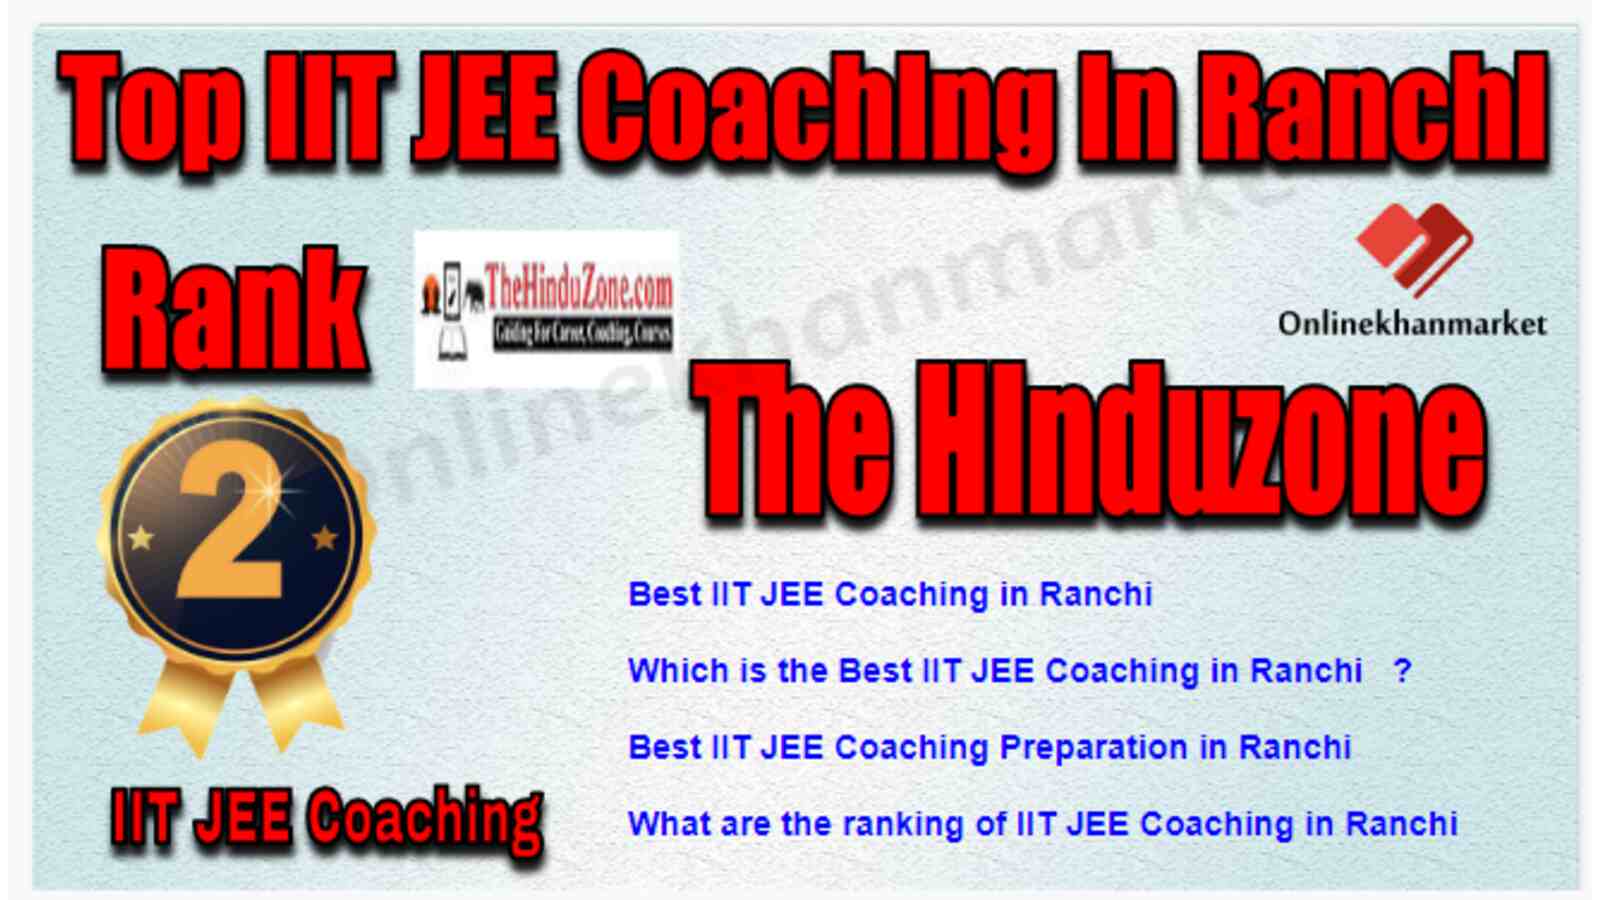 Rank 2 Best IIT JEE Coaching in Ranchi